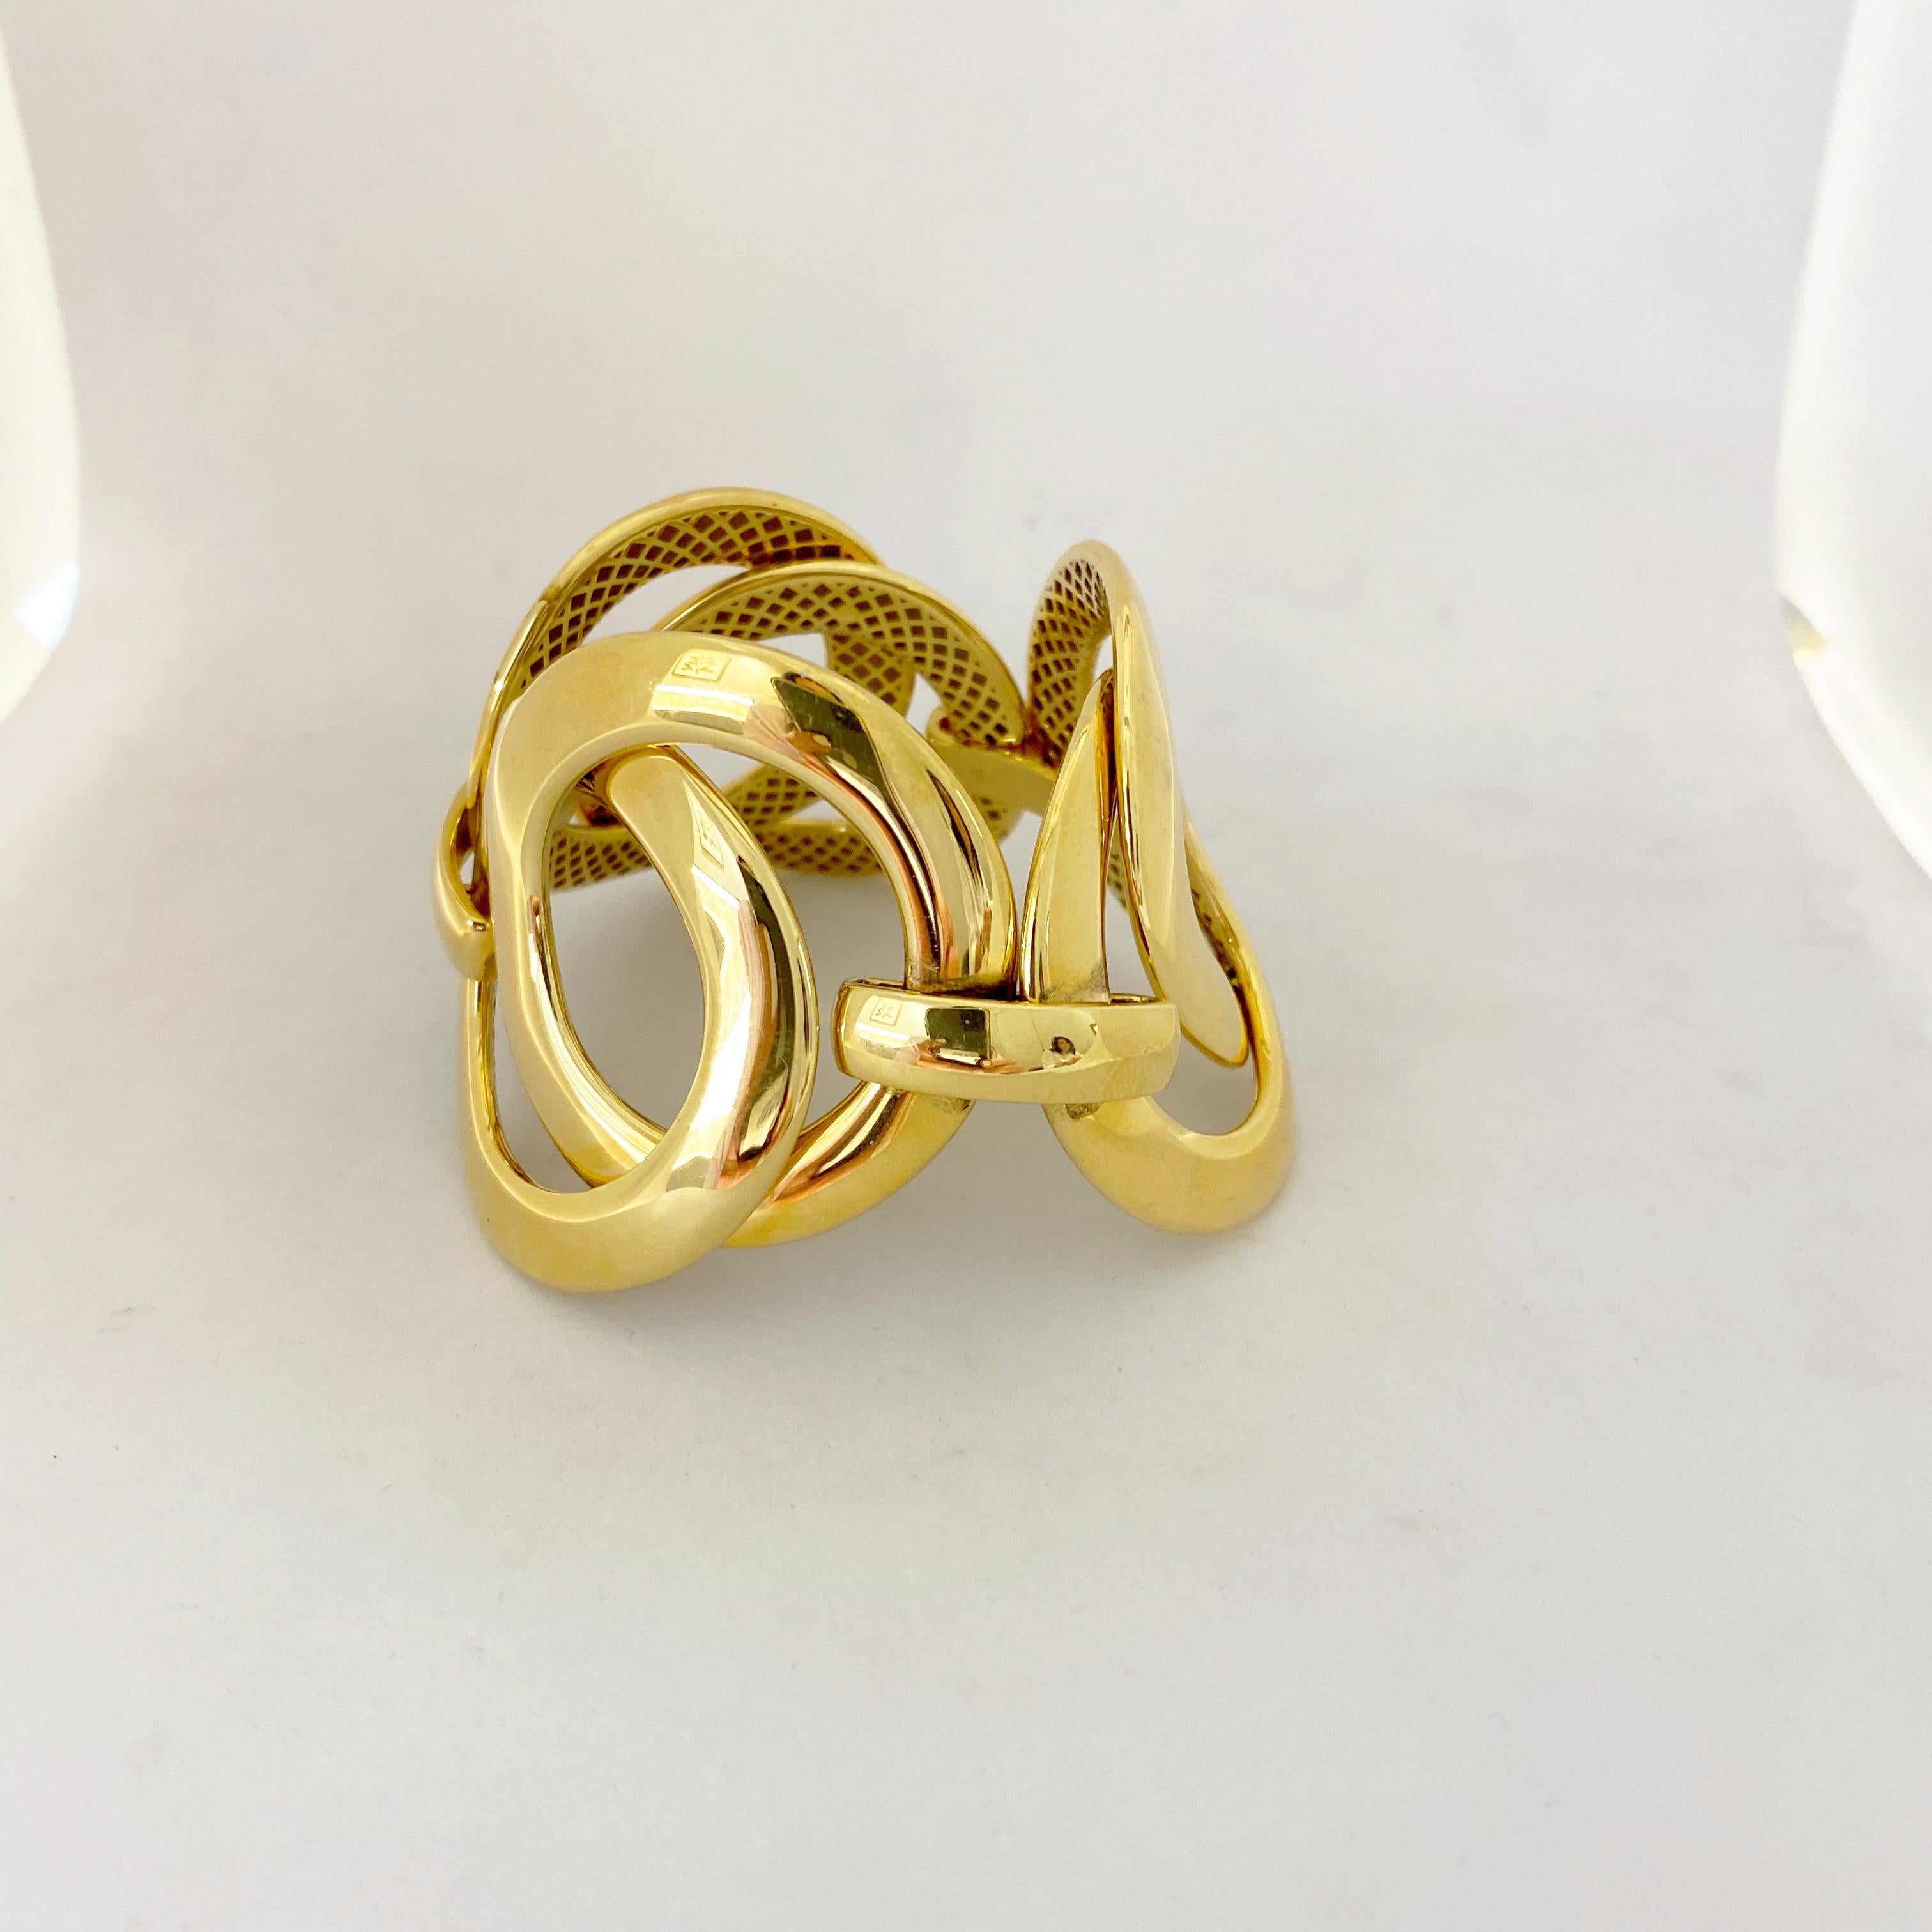 Antonio Papini Gioielli ist seit 40 Jahren in der Juwelierbranche tätig und hat Hunderten von Boutiquen ein Denkmal gesetzt. 
Dieses Armband aus 18 Karat Gelbgold besteht aus 6 ineinander greifenden, hochglanzpolierten Gliedern. Wenn das Armband am